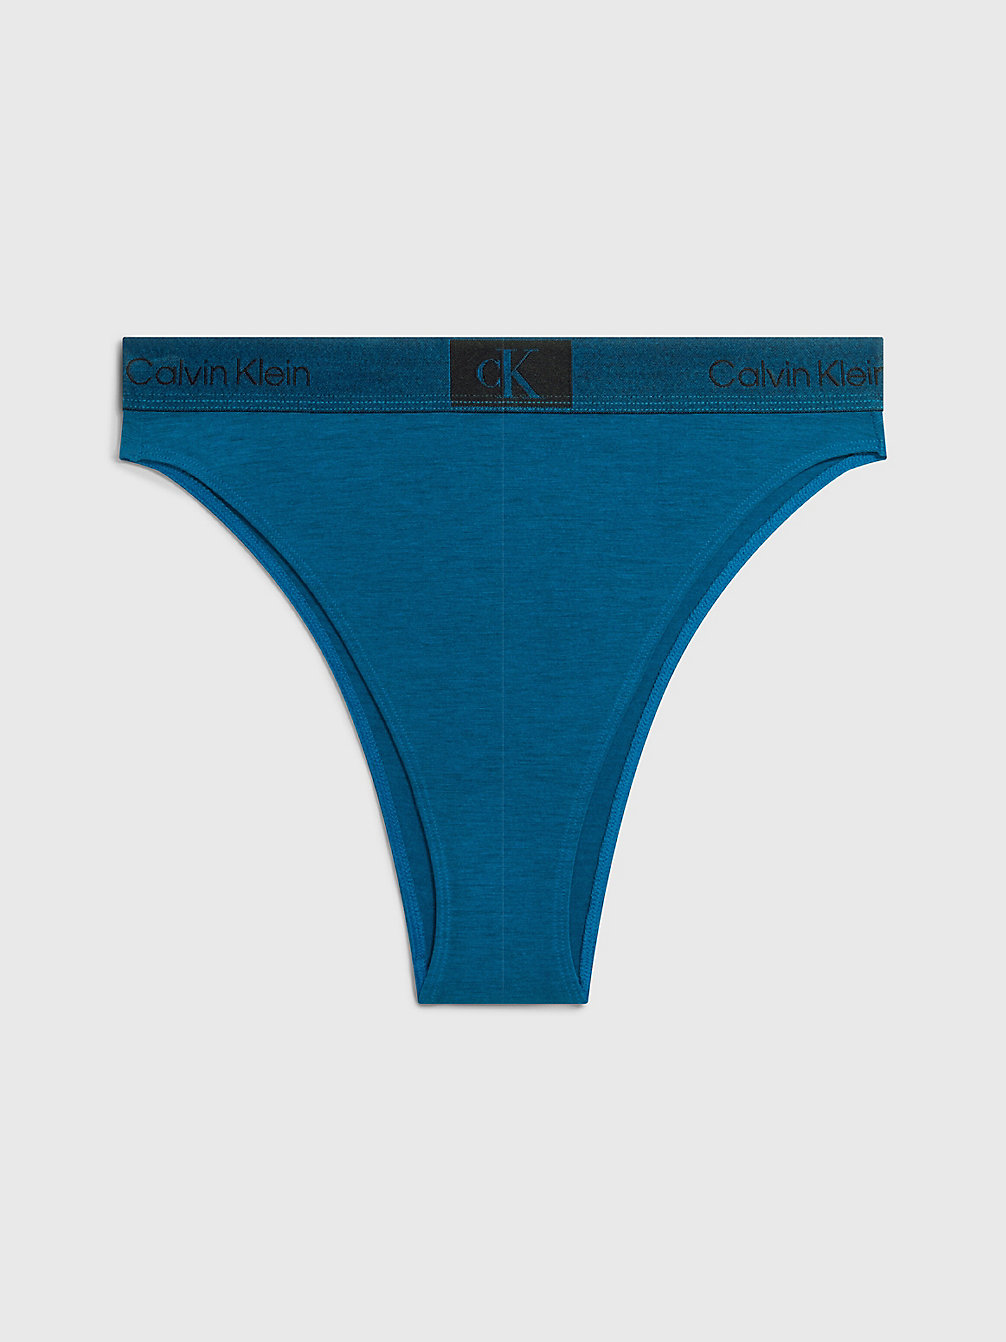 AMPLIFIED BLUE Brazilian Slip Mit Hoher Taille - Ck96 undefined Damen Calvin Klein